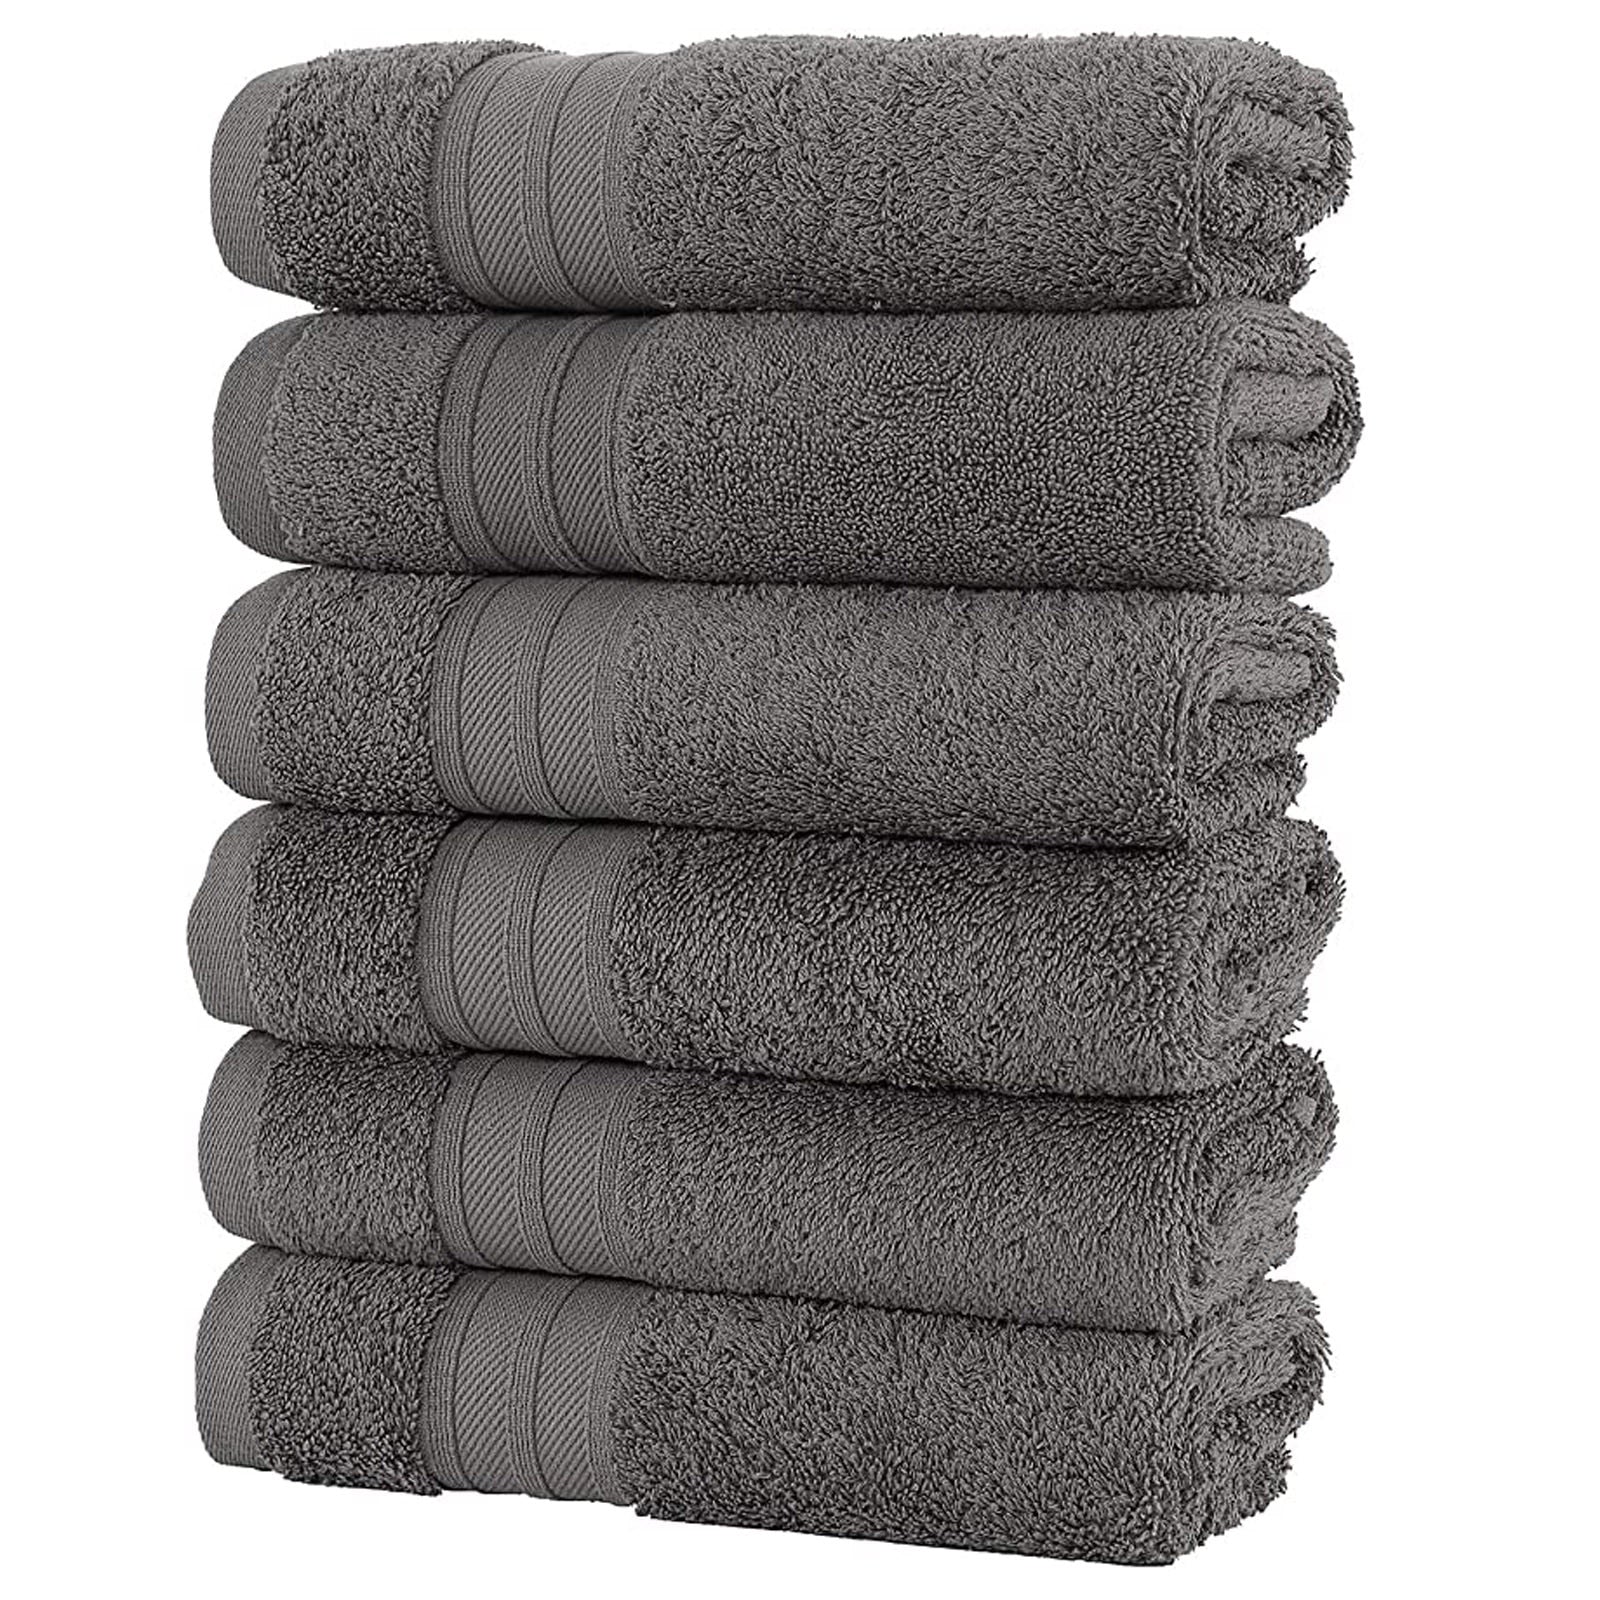 Buy Face Towel - Pure Cotton Super Soft 30cm Square Online